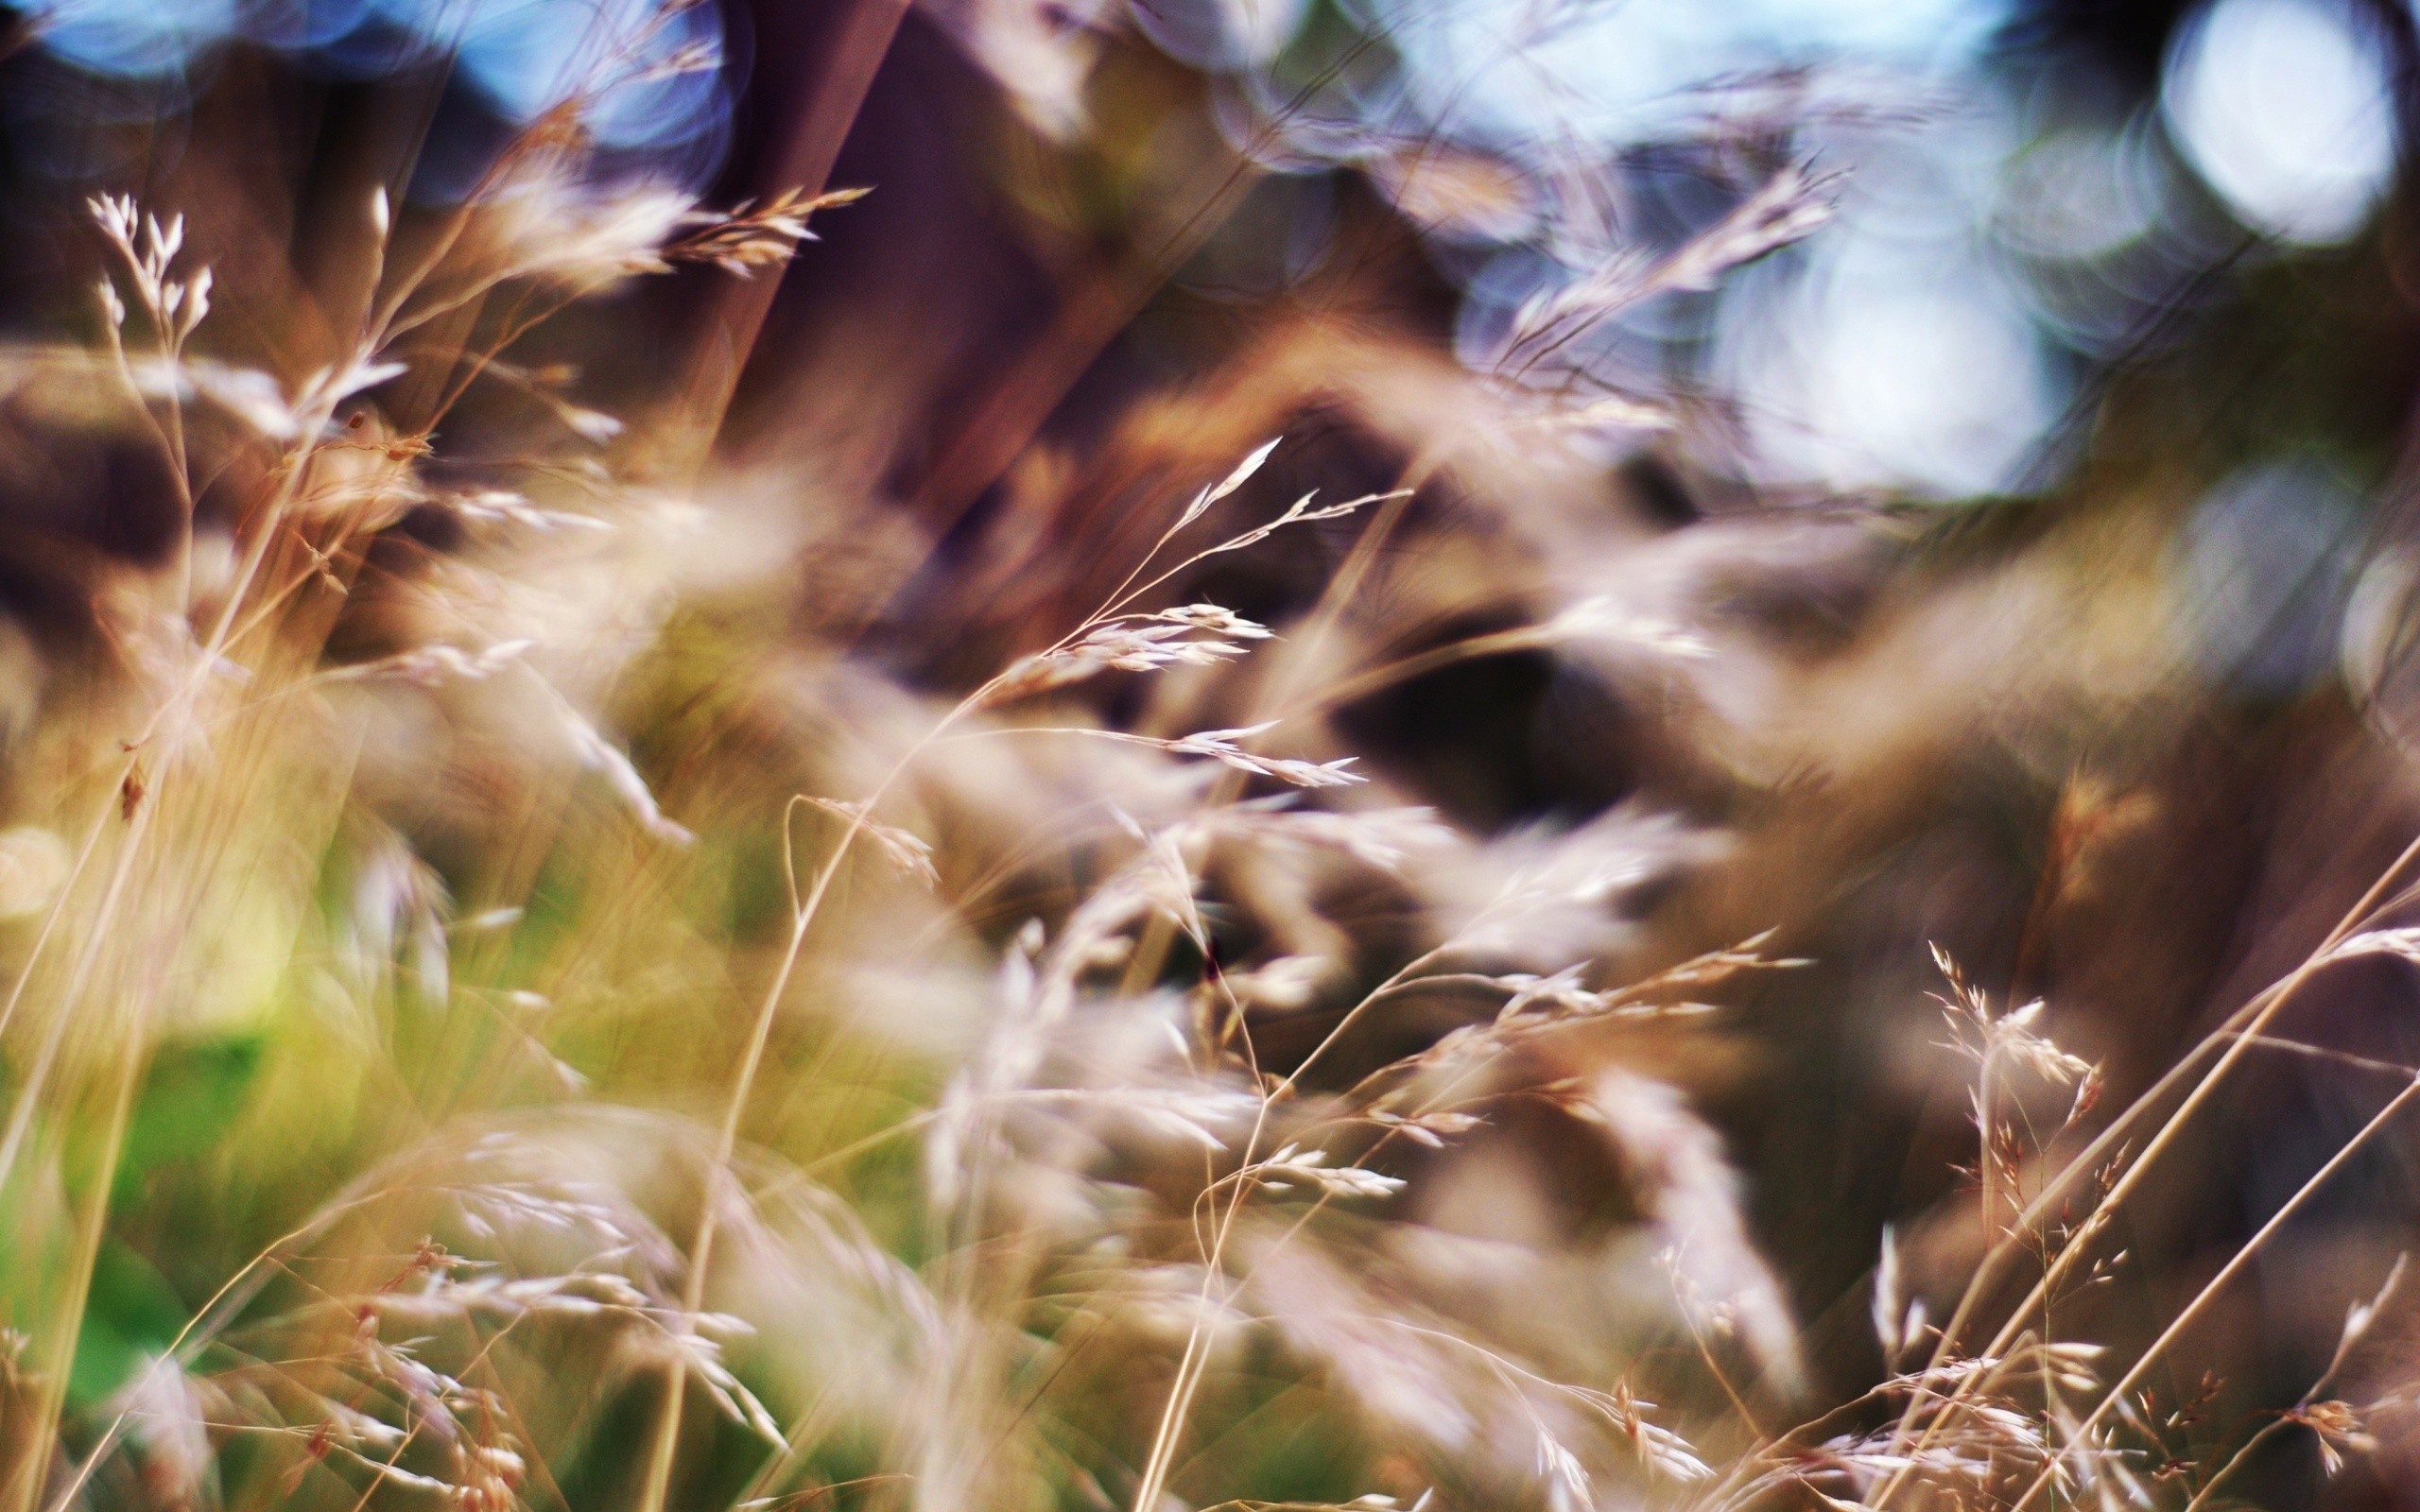 Blurred summer grass